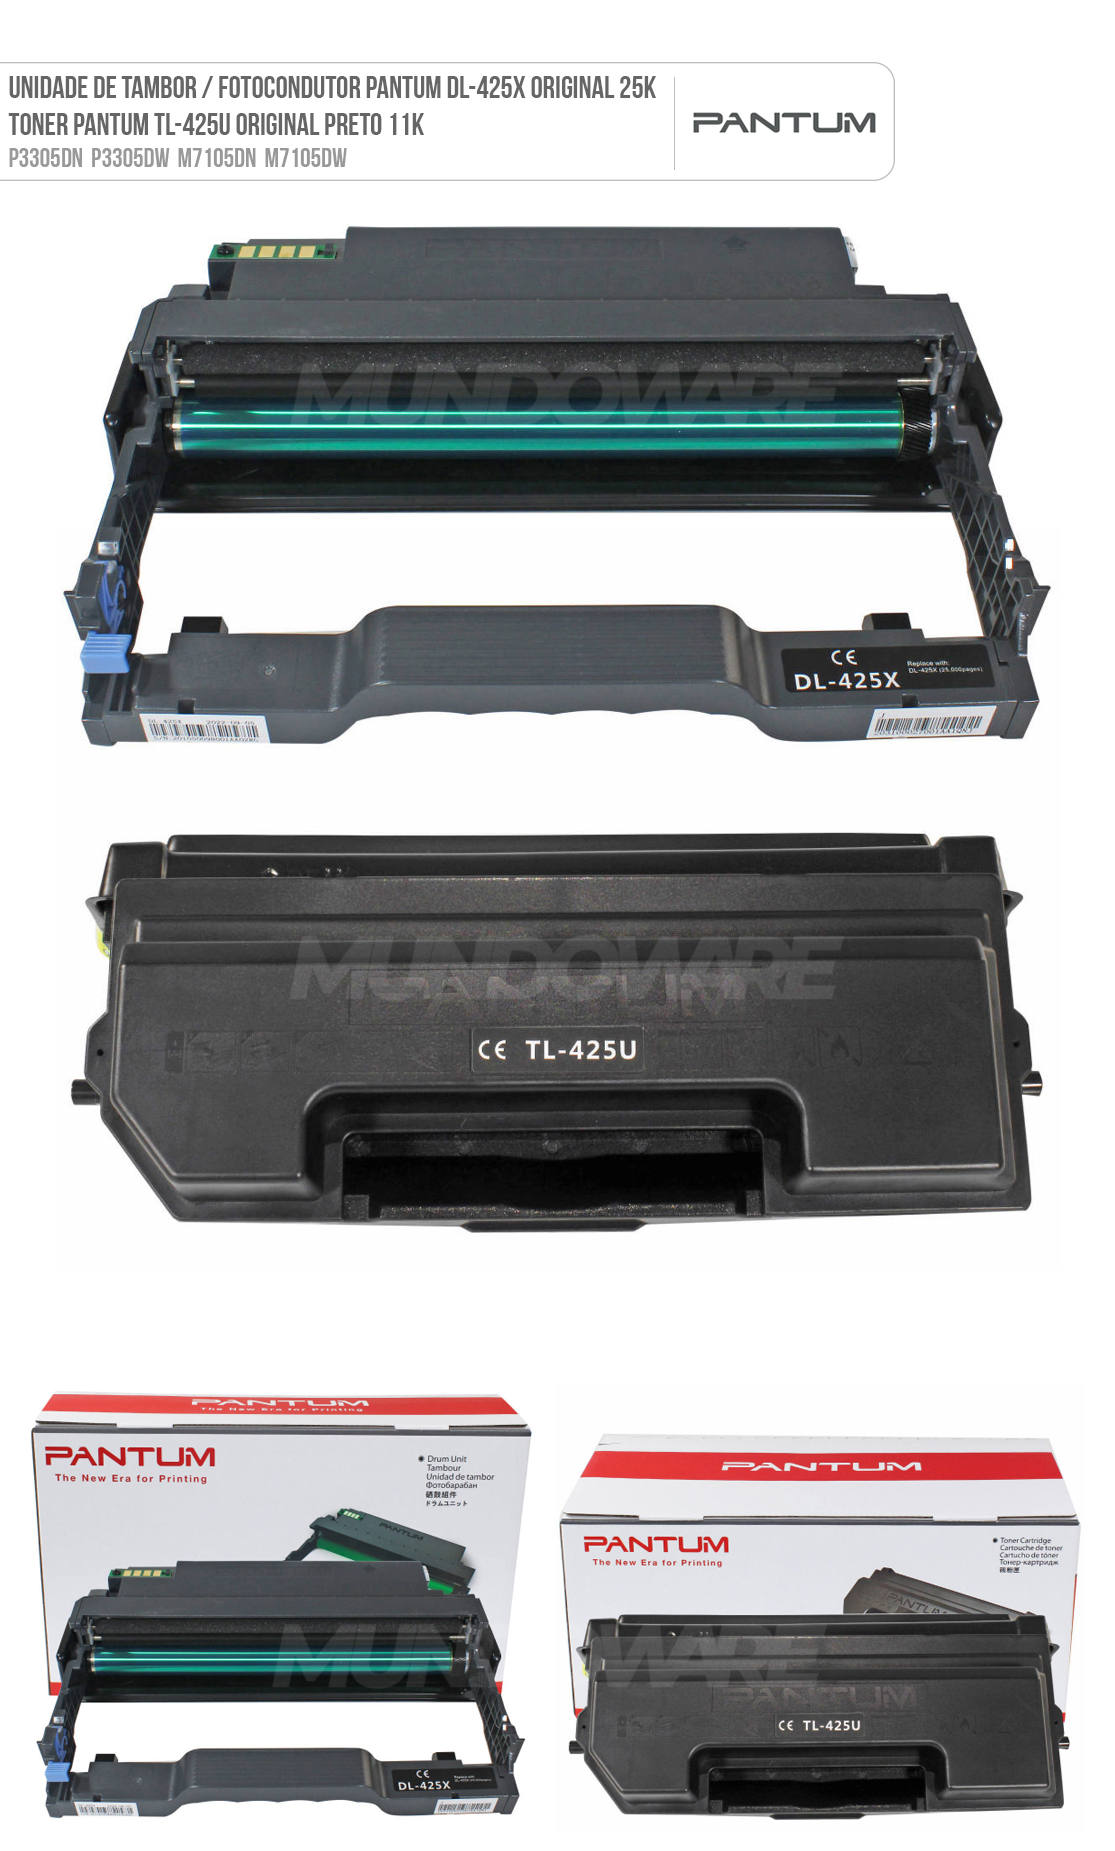 Combo Fotocondutor DL-425X + Toner TL-425U Originais para Pantum P3305 P3305DN P3305DW M7105 M7105DN M7105DW 3305 7105